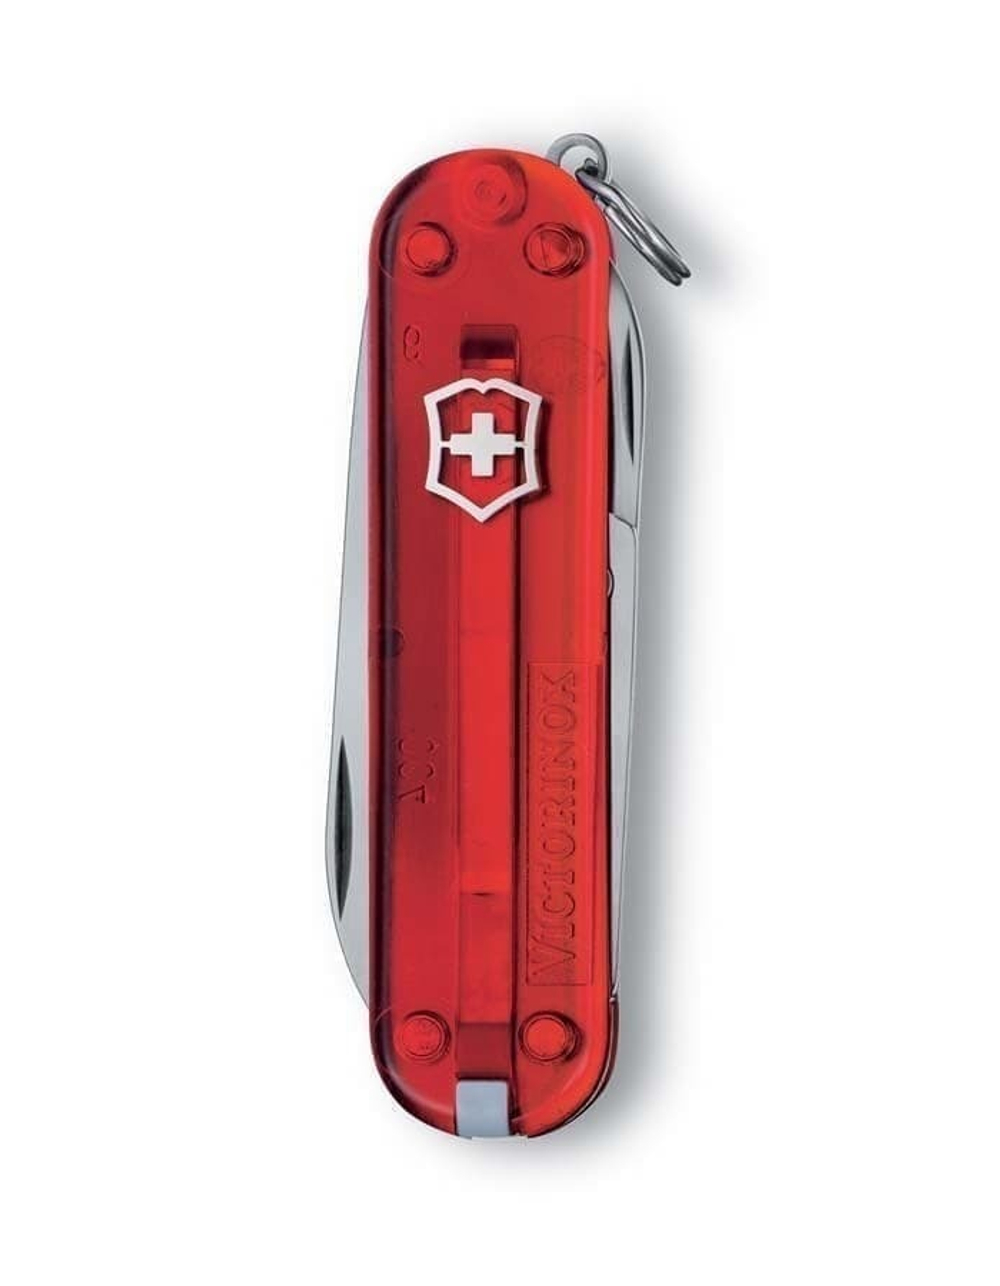 Нож-брелок VICTORINOX Classic SD, 58 мм, 7 функций, полупрозрачный красный